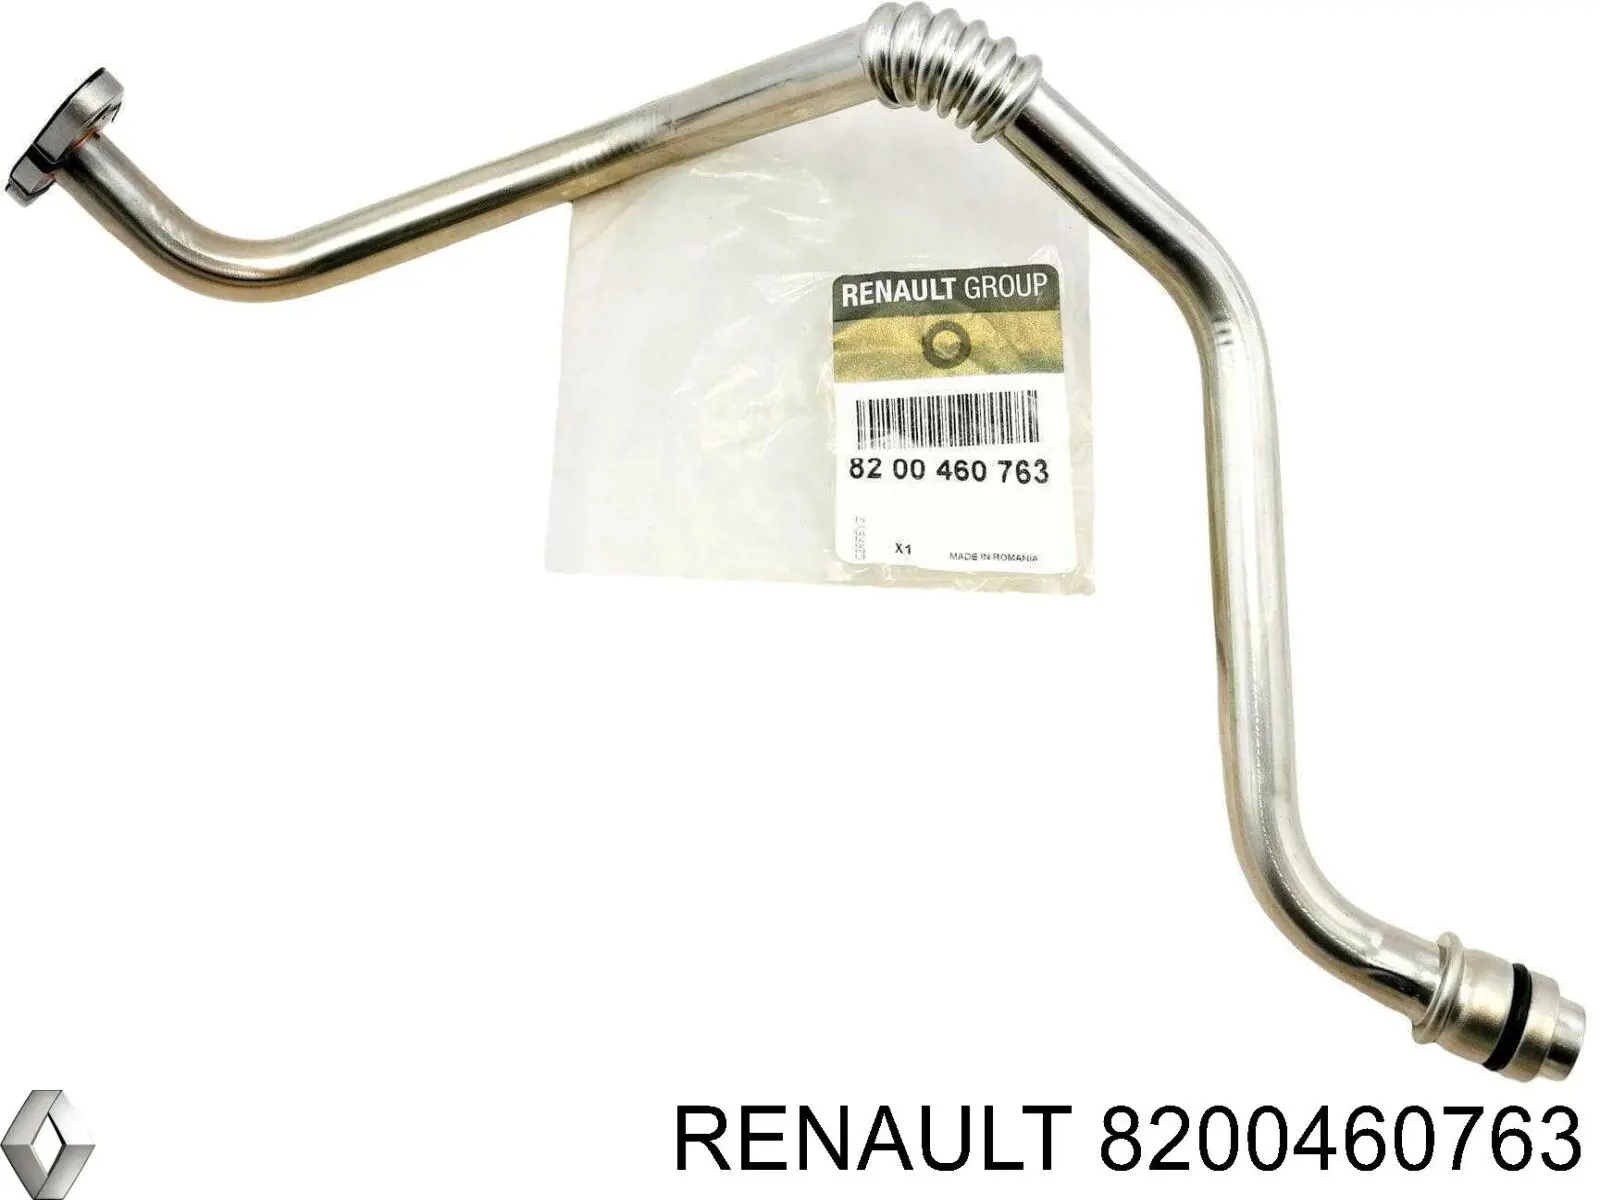 8200460763 Renault (RVI) tubo (manguera Para Drenar El Aceite De Una Turbina)